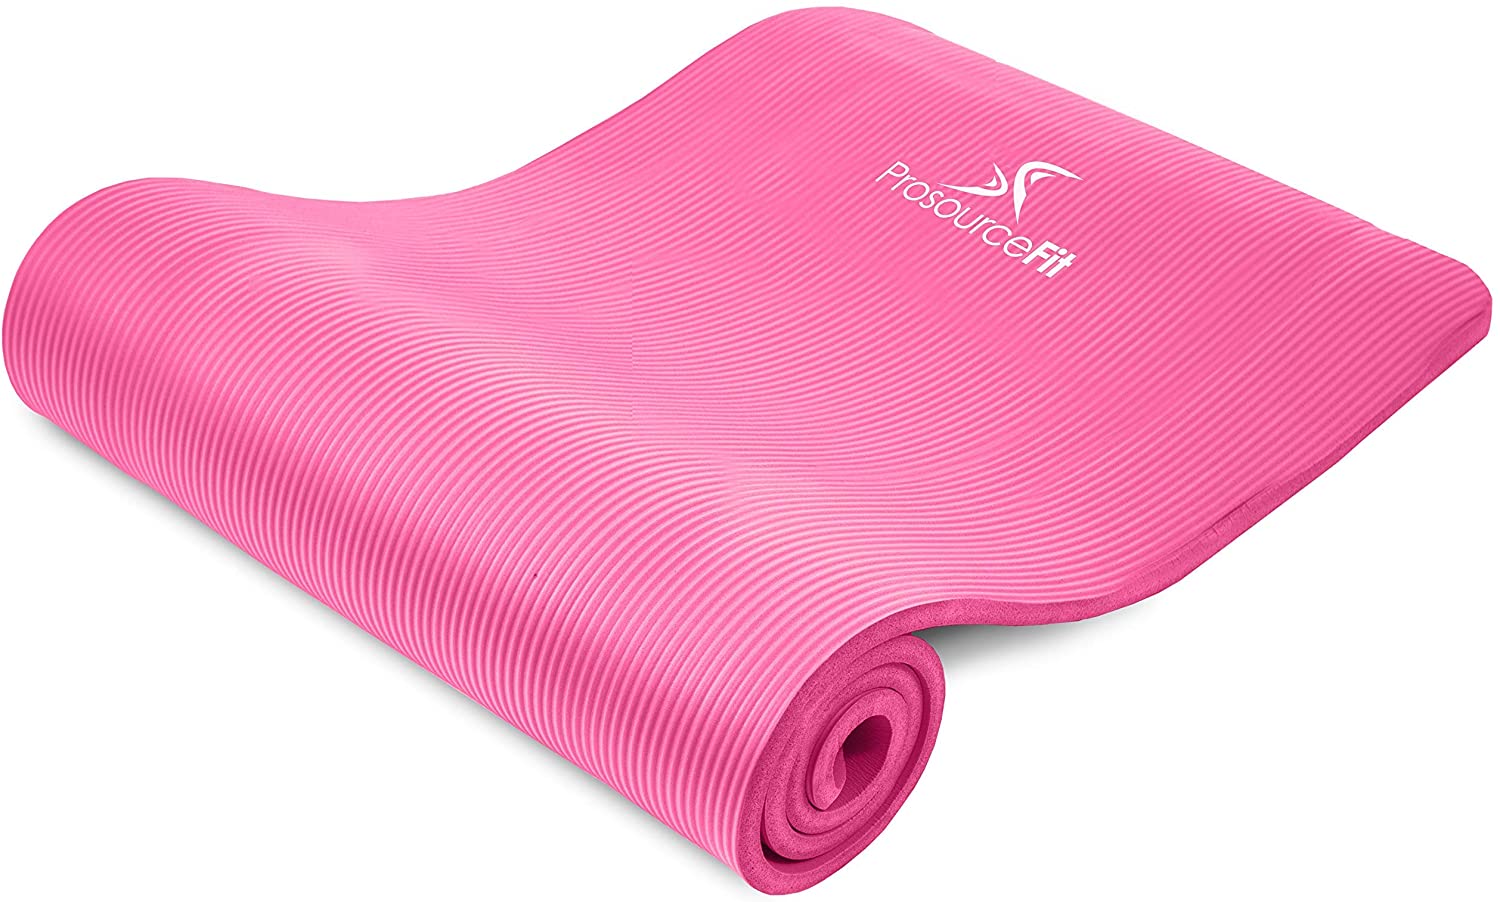  GEQWE Esterilla de yoga y pilates de 31 pulgadas de ancho,  0.315 in de grosor, de alta densidad, antideslizante, esterilla de yoga  antideslizante (color morado, tamaño: 72,362.5 in) : Deportes y